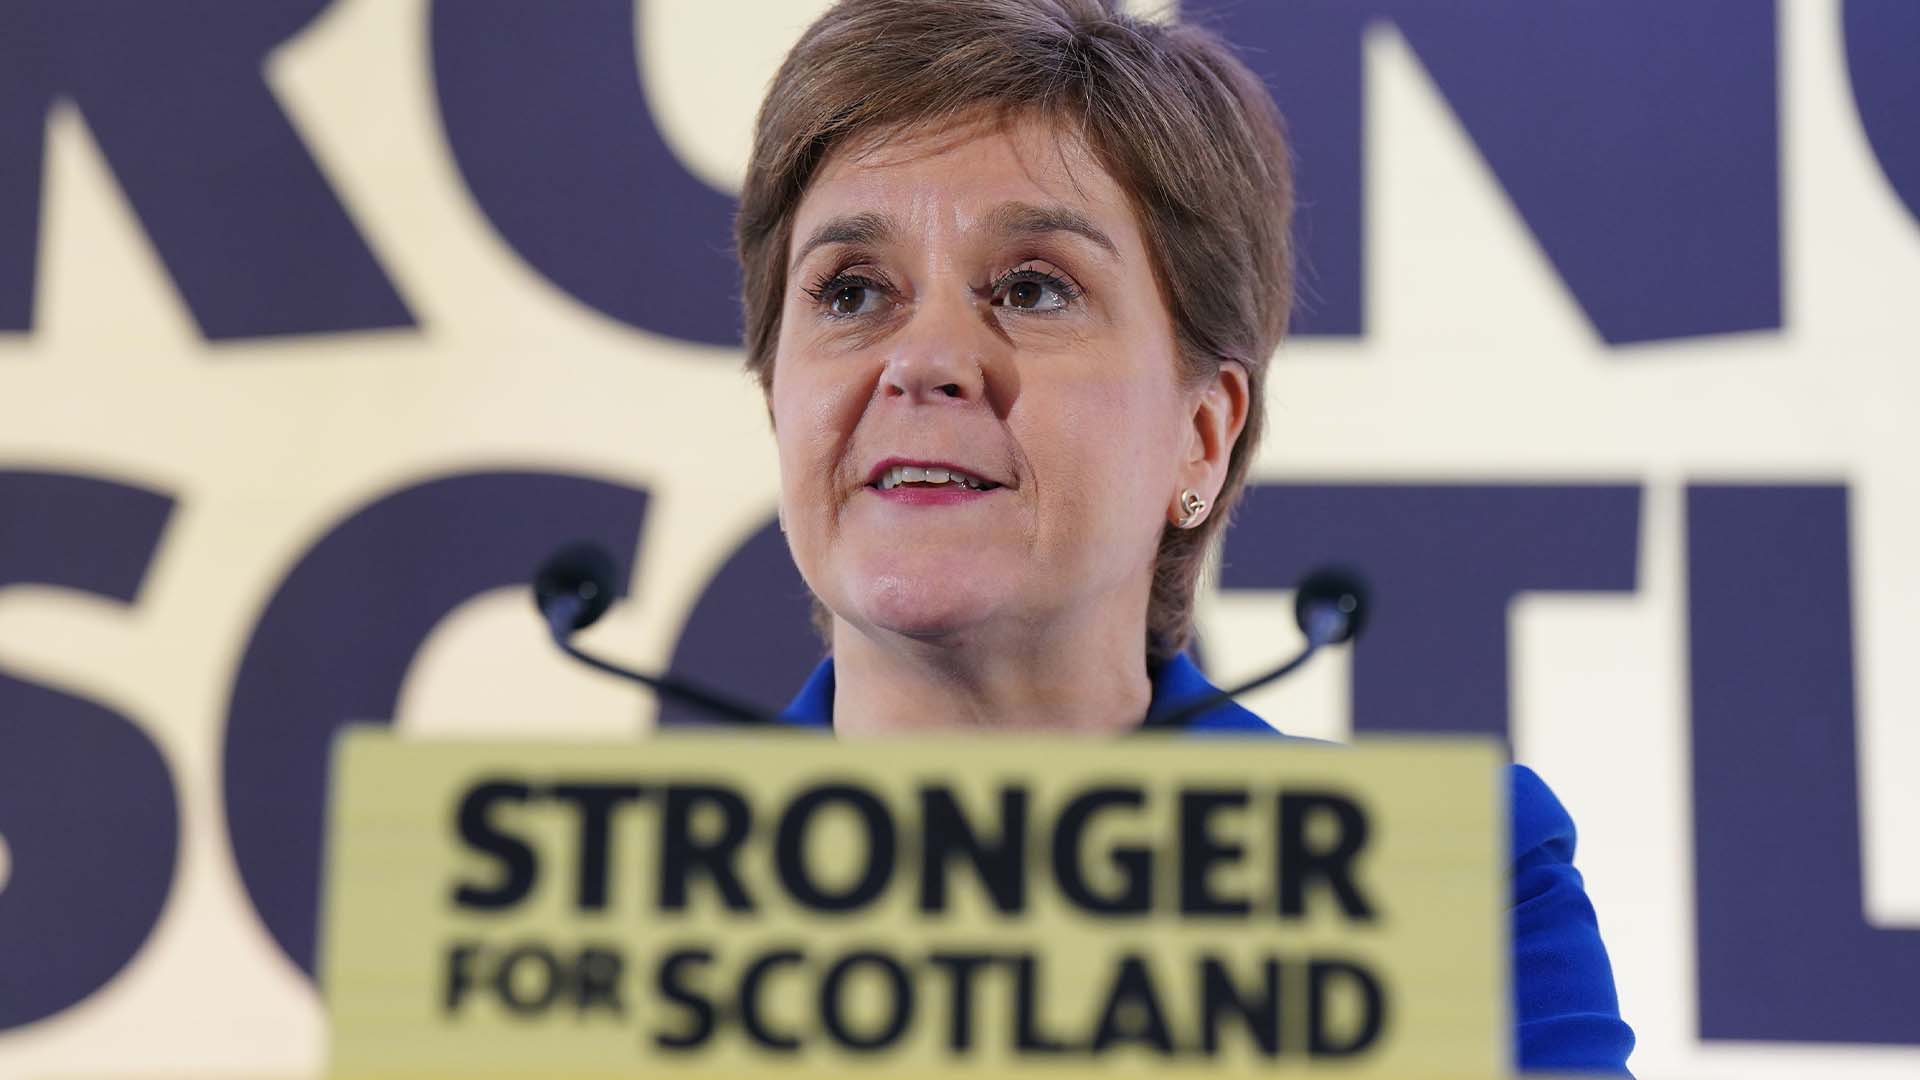 La première ministre écossaise, Nicola Sturgeon, a déclaré qu'elle respecterait la décision, mais qu'elle poursuivrait la lutte pour l'indépendance. 